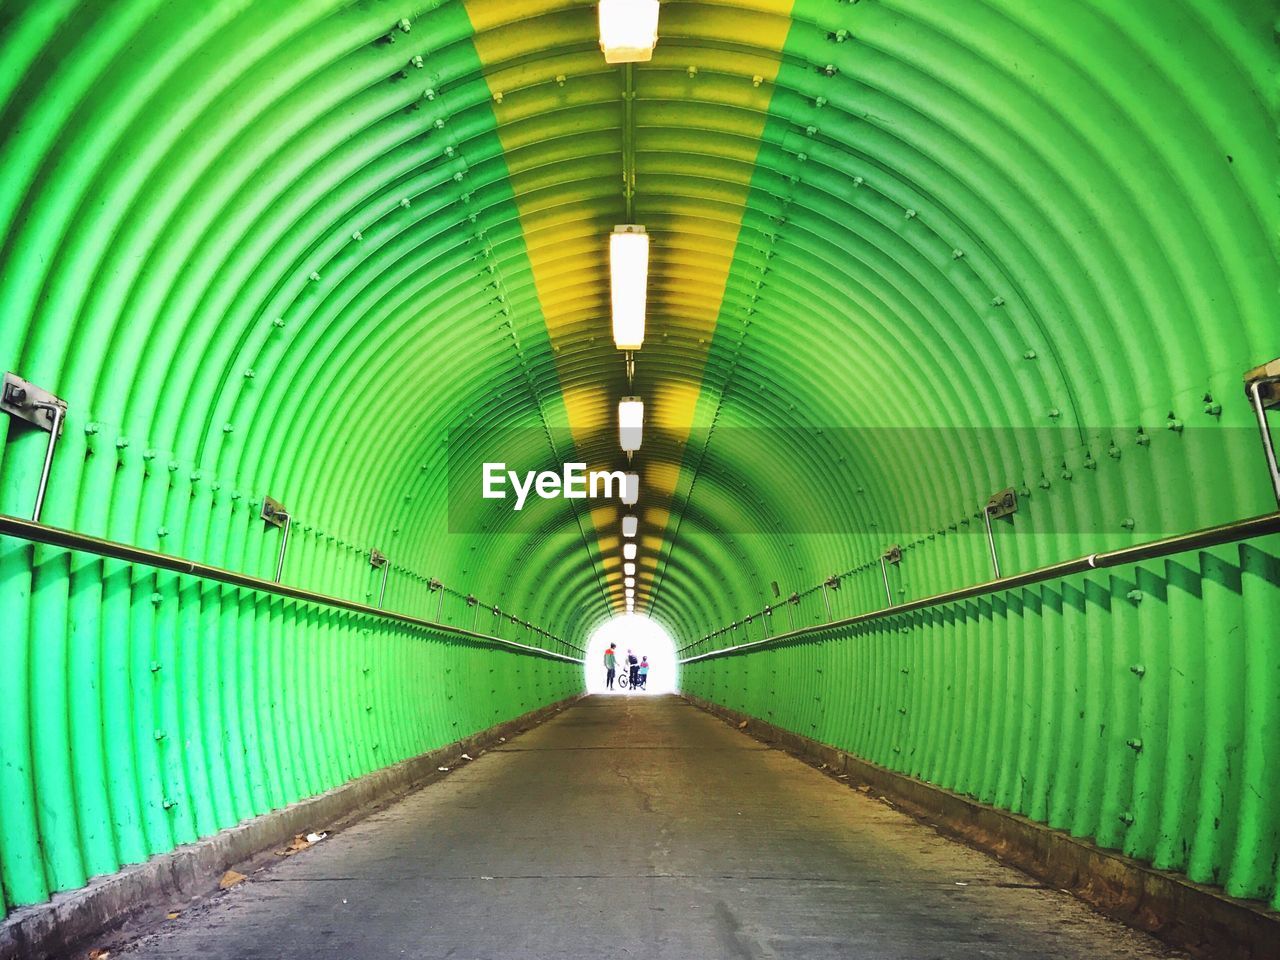 Road in green metallic tunnel